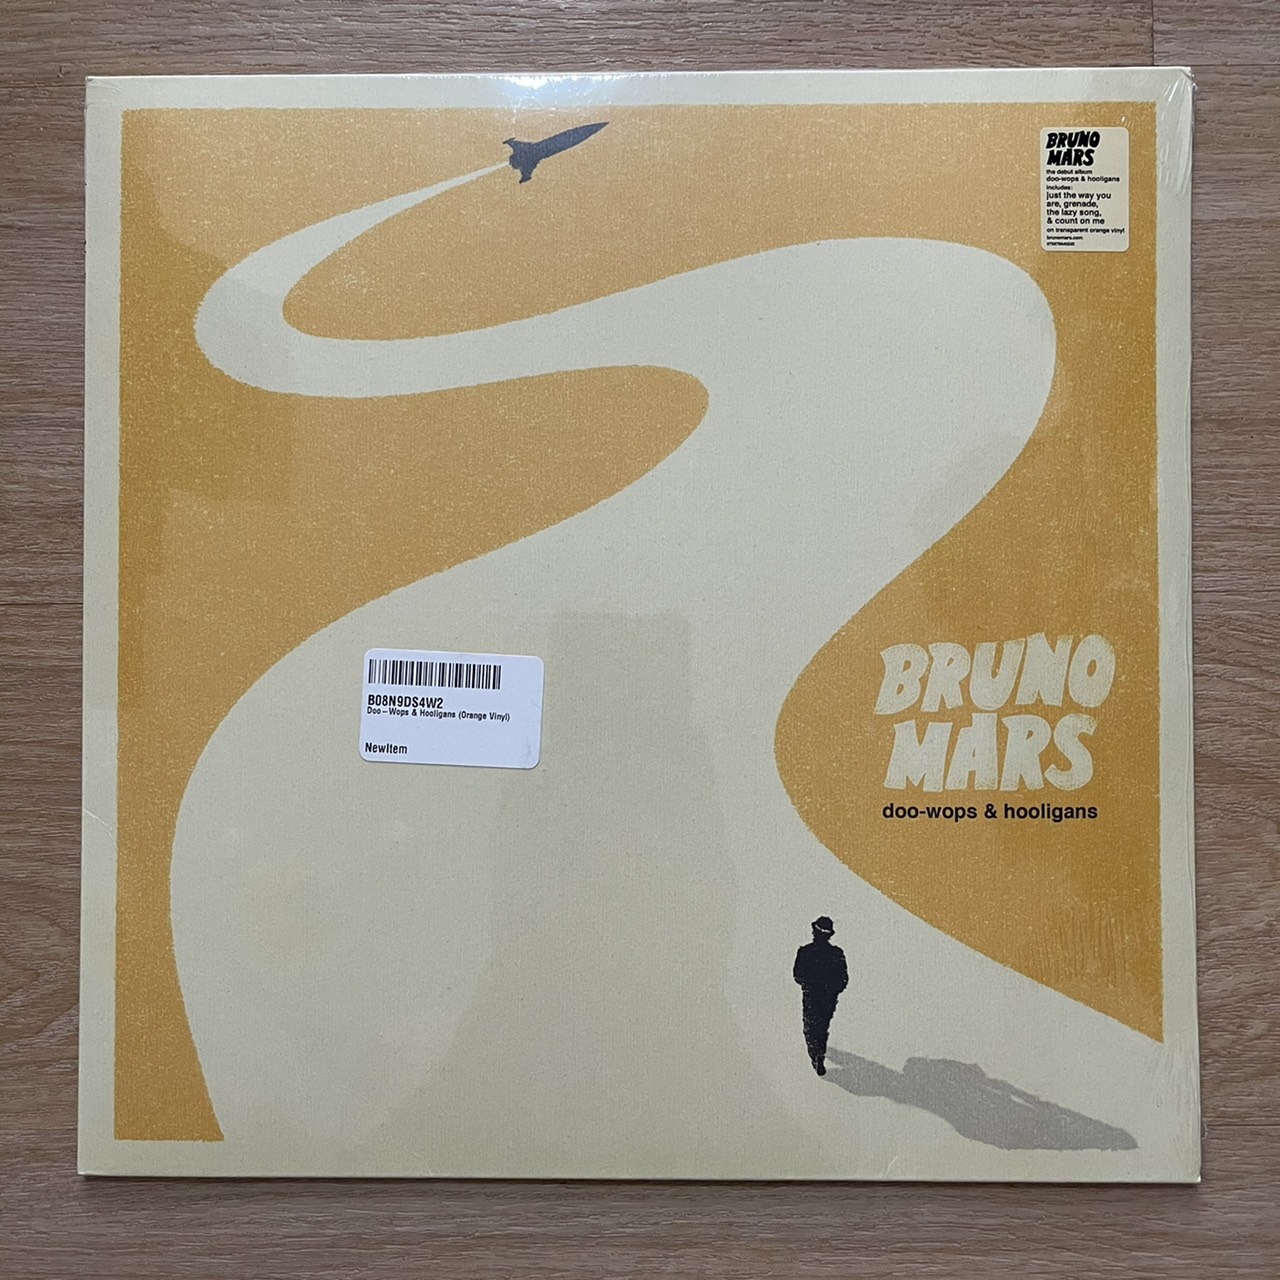 แผ่นเสียง Bruno Mars – Doo-Wops & Hooligans Limited Edition, Orange Translucent vinyl แผ่นเสียงใหม่ ซีล